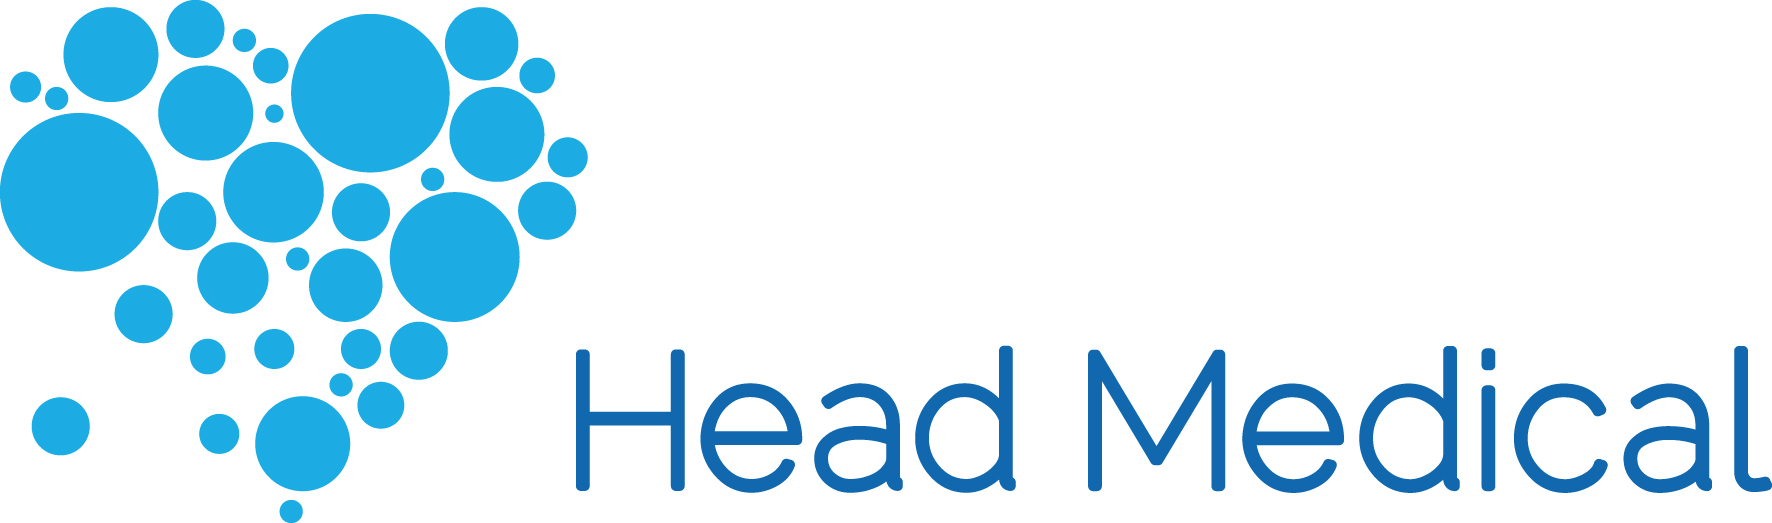 NEW - Head Medical Logo RGB